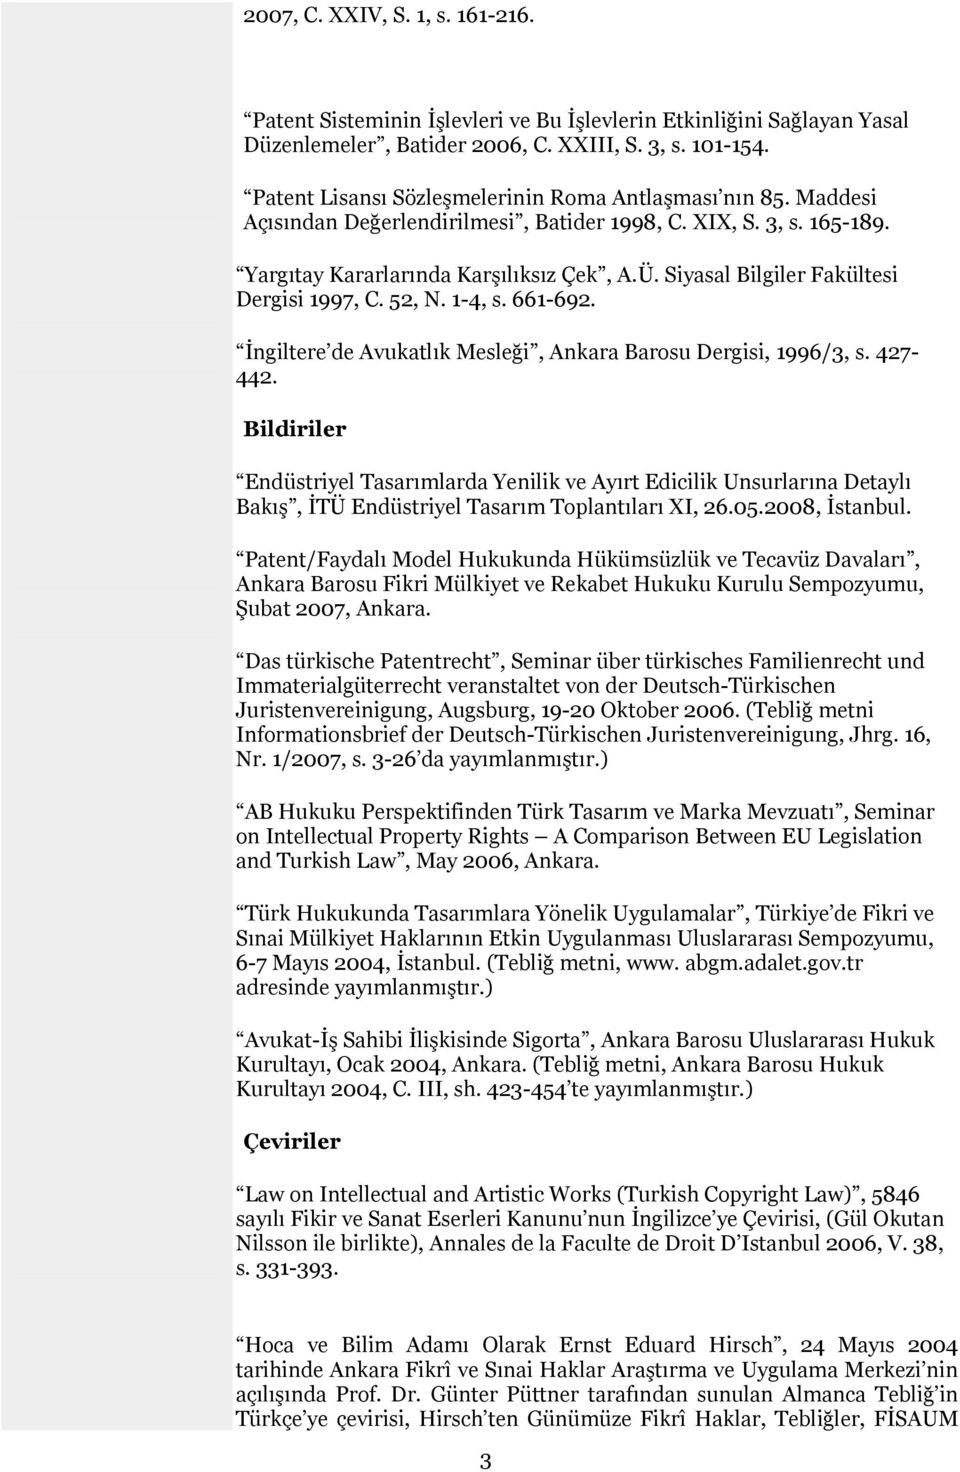 Siyasal Bilgiler Fakültesi Dergisi 1997, C. 52, N. 1-4, s. 661-692. İngiltere de Avukatlık Mesleği, Ankara Barosu Dergisi, 1996/3, s. 427-442.